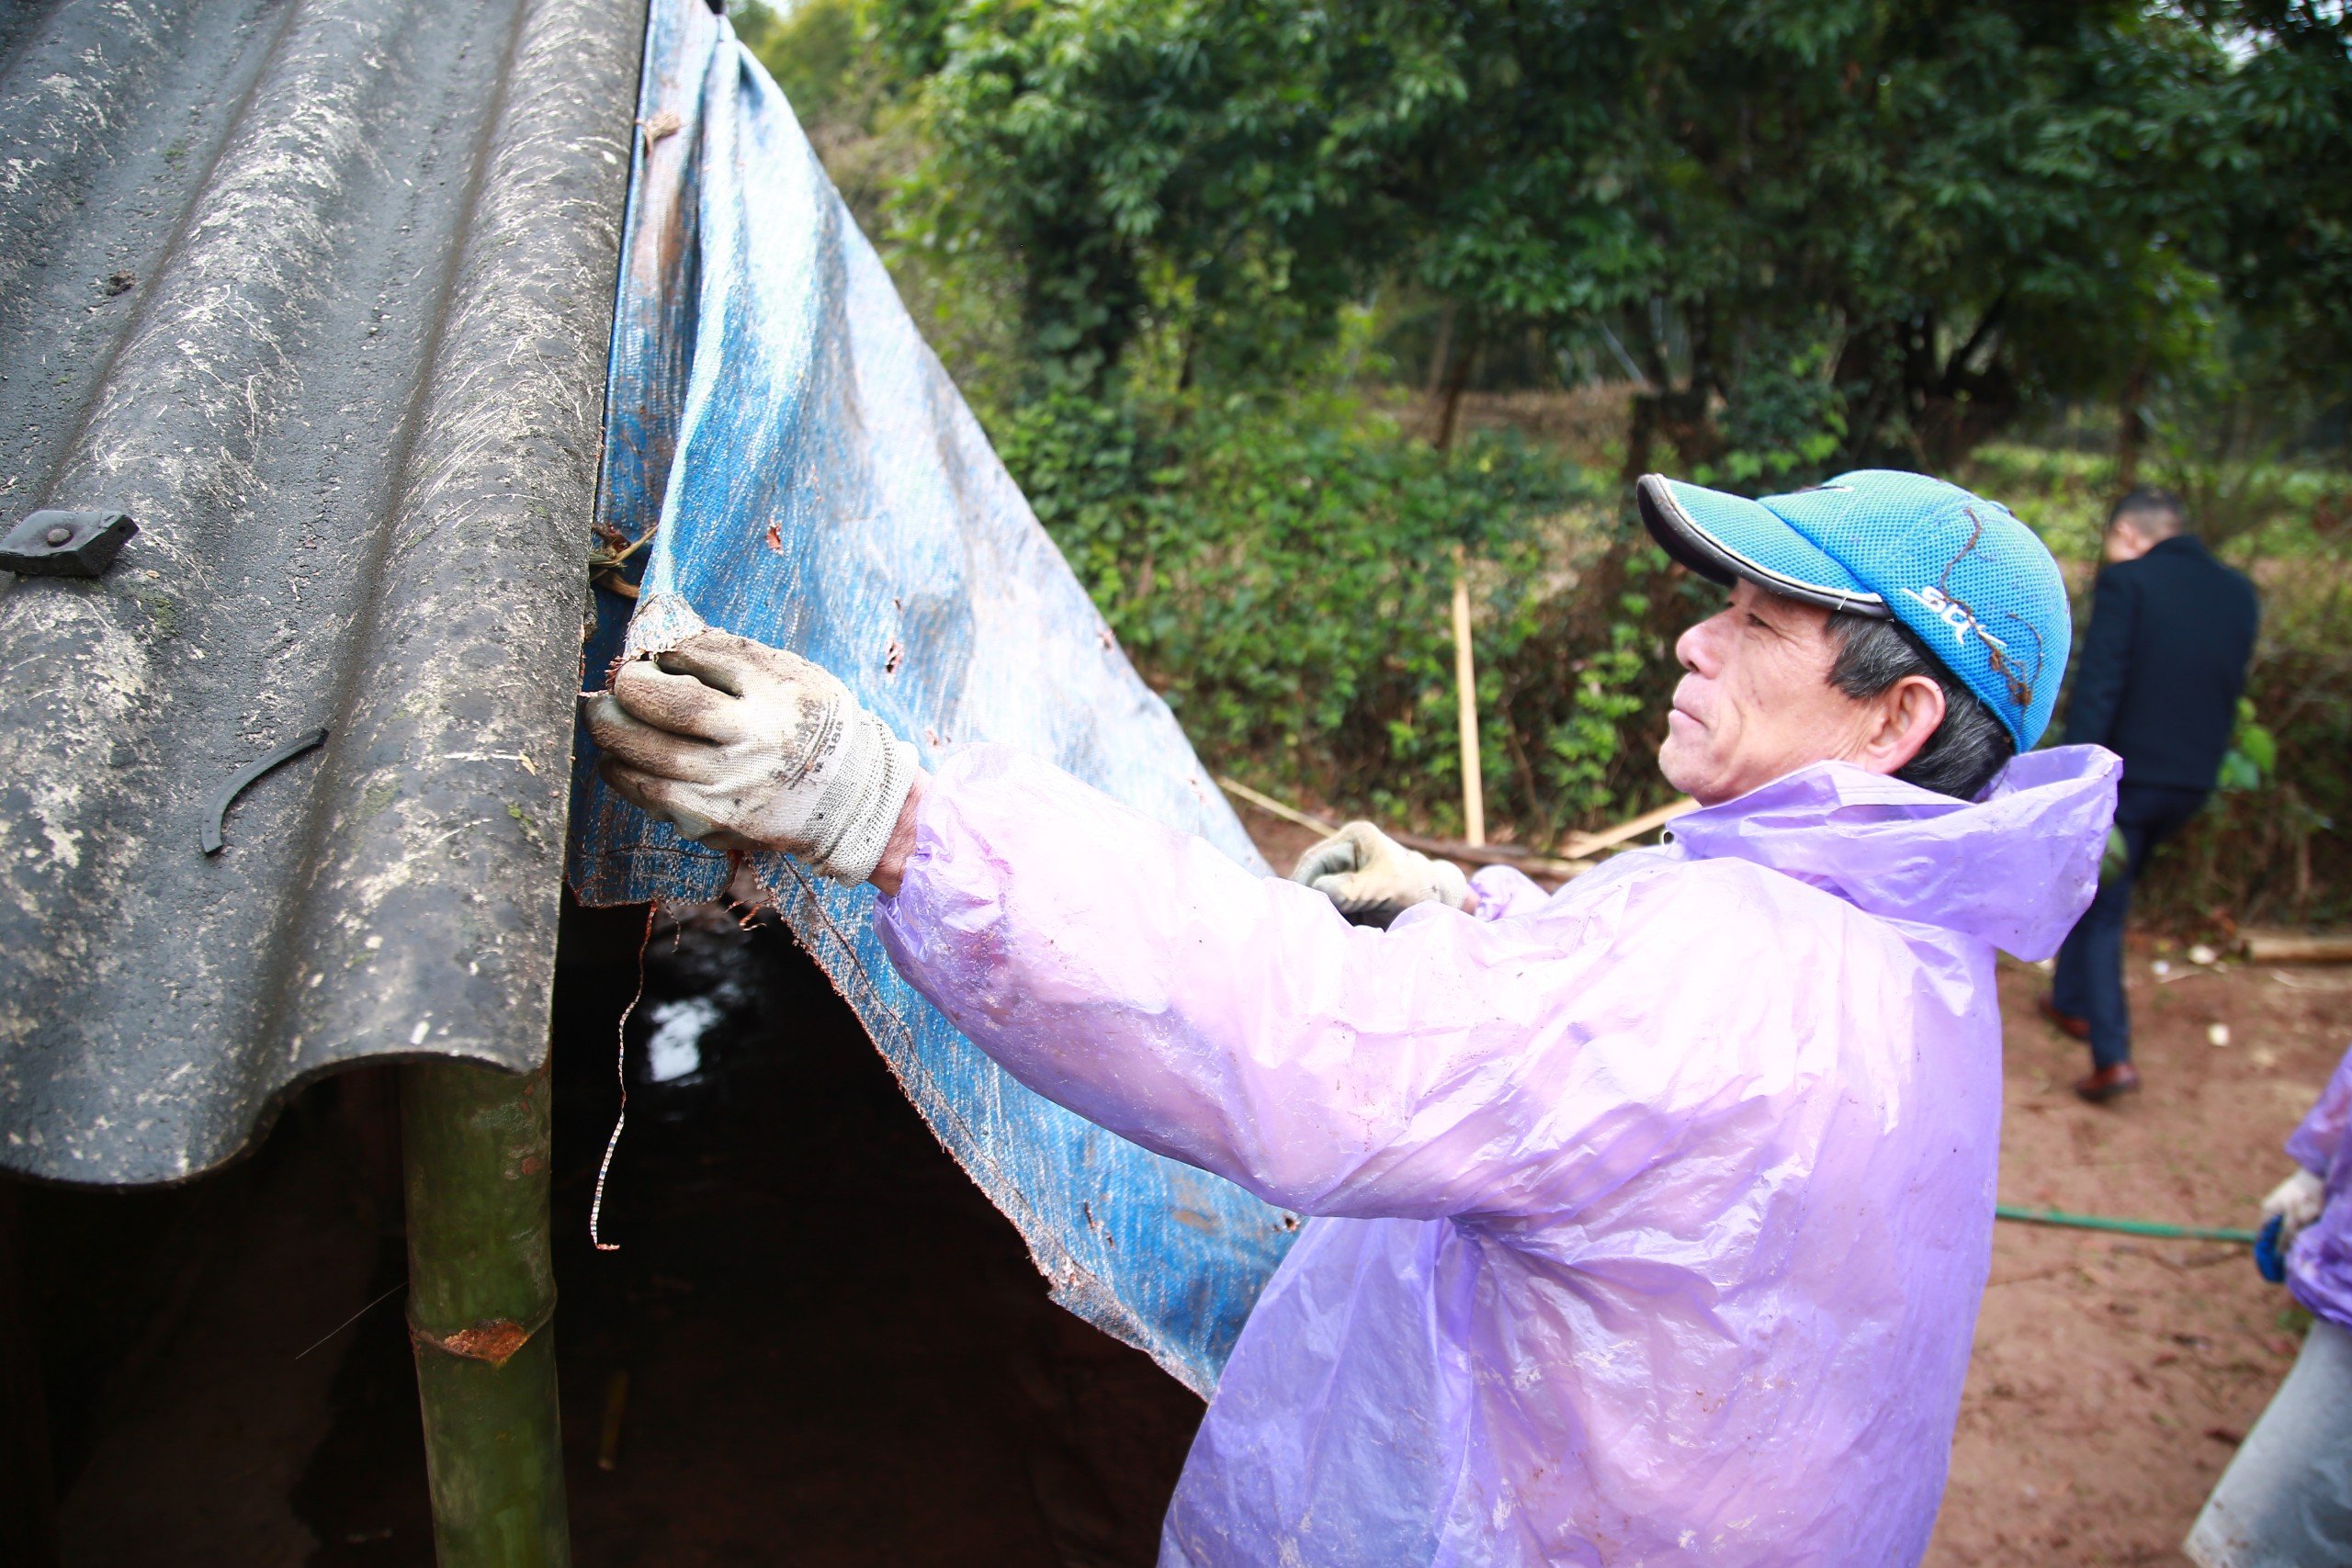 Rét đậm rét hại bao trùm, nông dân Quảng Ninh nghĩ cách bảo vệ "đầu cơ nghiệp"- Ảnh 1.